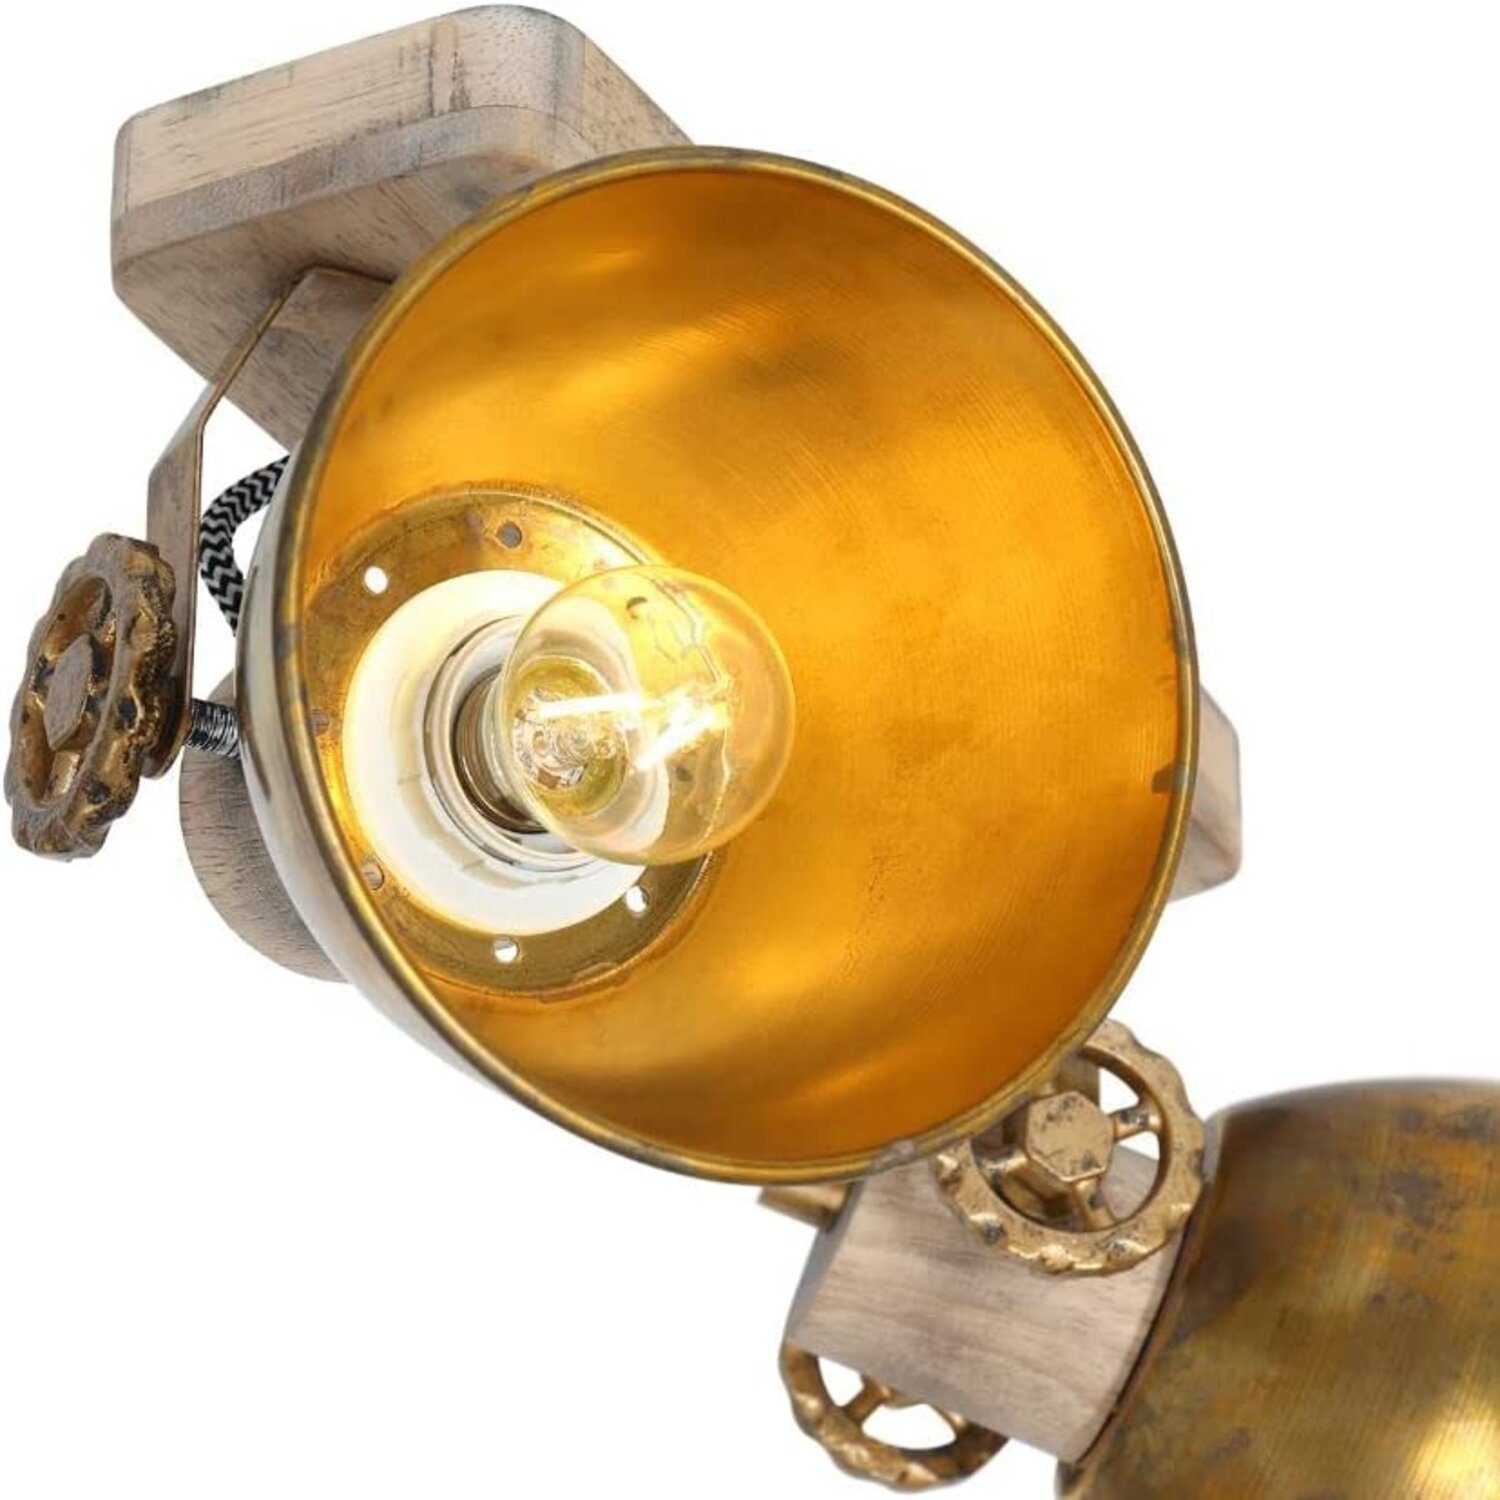 Deckenlampe Atmosphäre, Lichthandel Lampenschirme Rustikal LED Industrie incl. Vintage Hoch Warmweiß, LED Anwendungsbereiche, Retro 7W & Vintage Vielfältige Gemütliche moderne Deckenleuchte LED, 7969Bronze Design, Metall Schwenkbare wechselbar, Holz